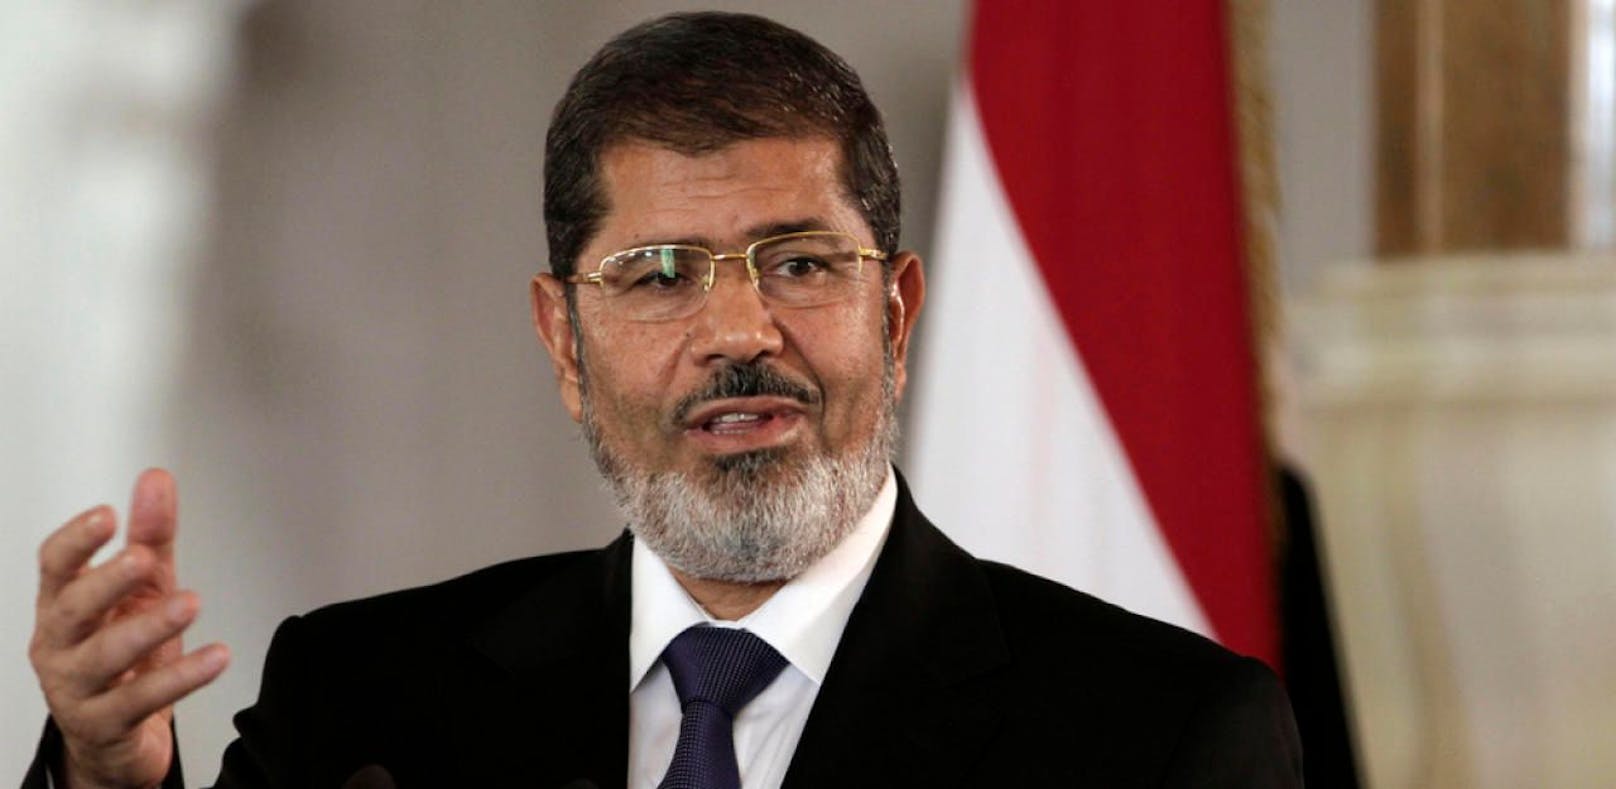 Mohammed Mursi ist tot.